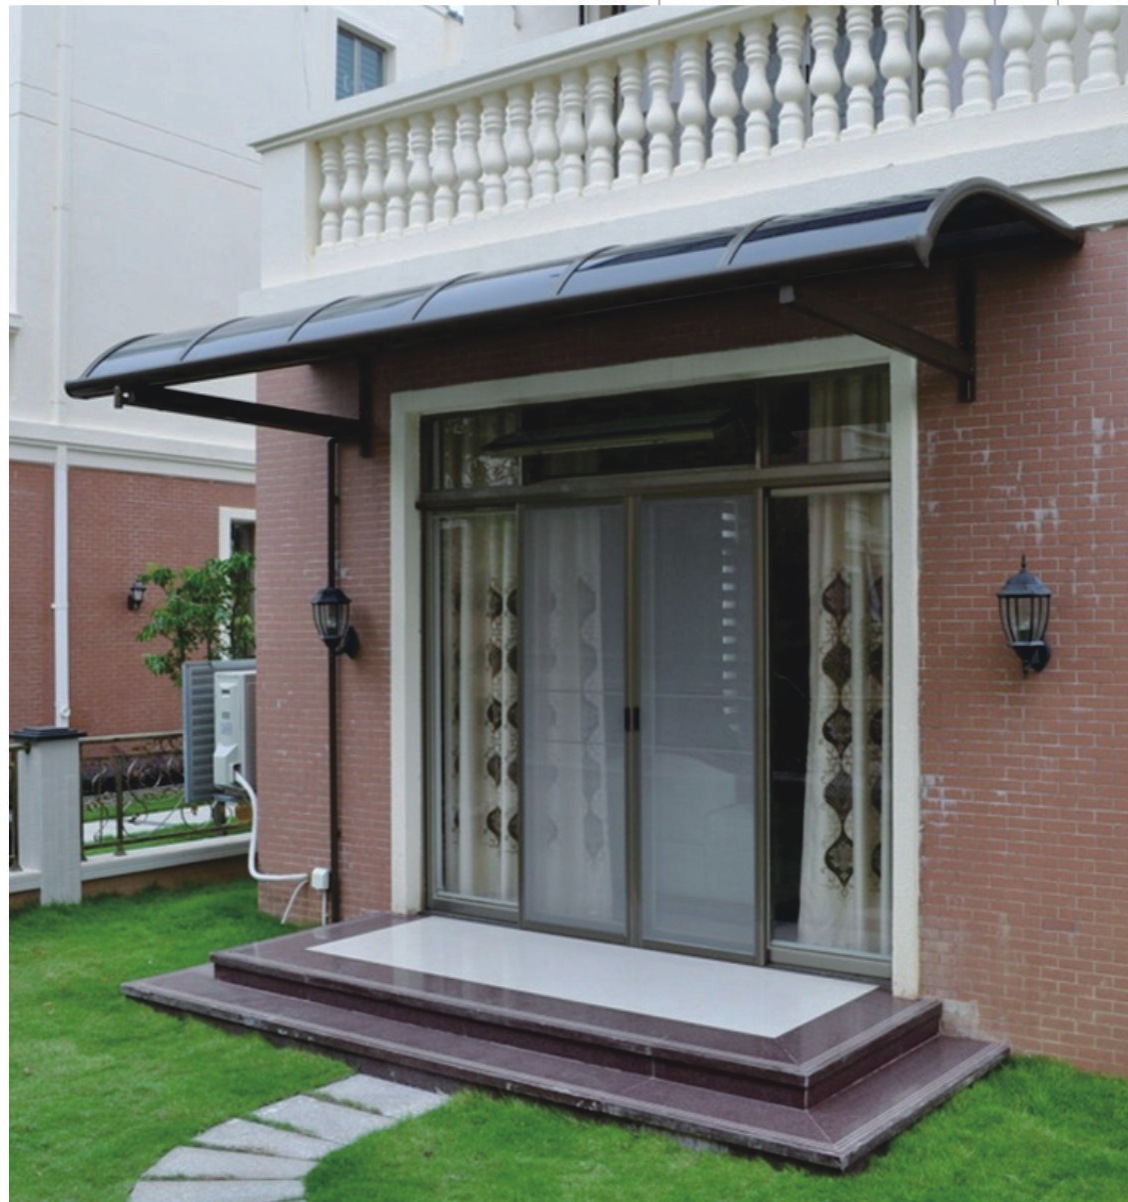 广州玻璃雨棚设计效果图_太平洋家居网整屋案例